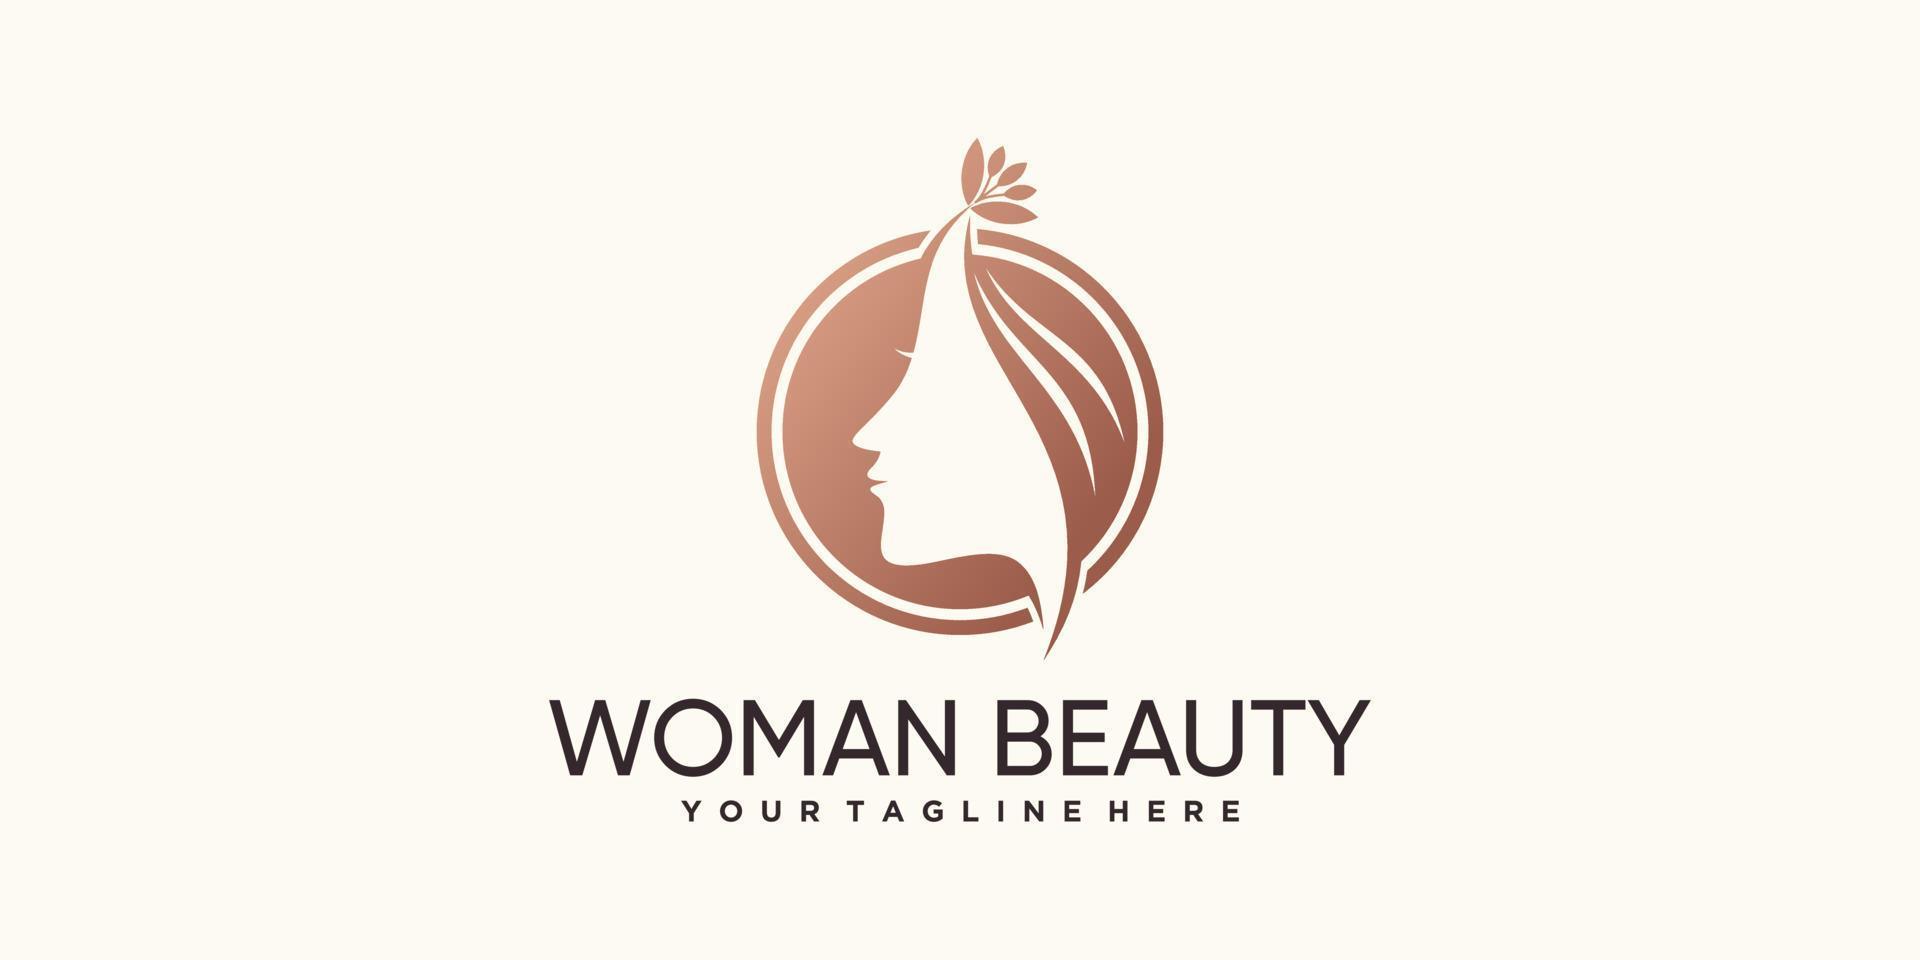 modelo de logotipo de ícone de mulher para vetor premium de salão de beleza